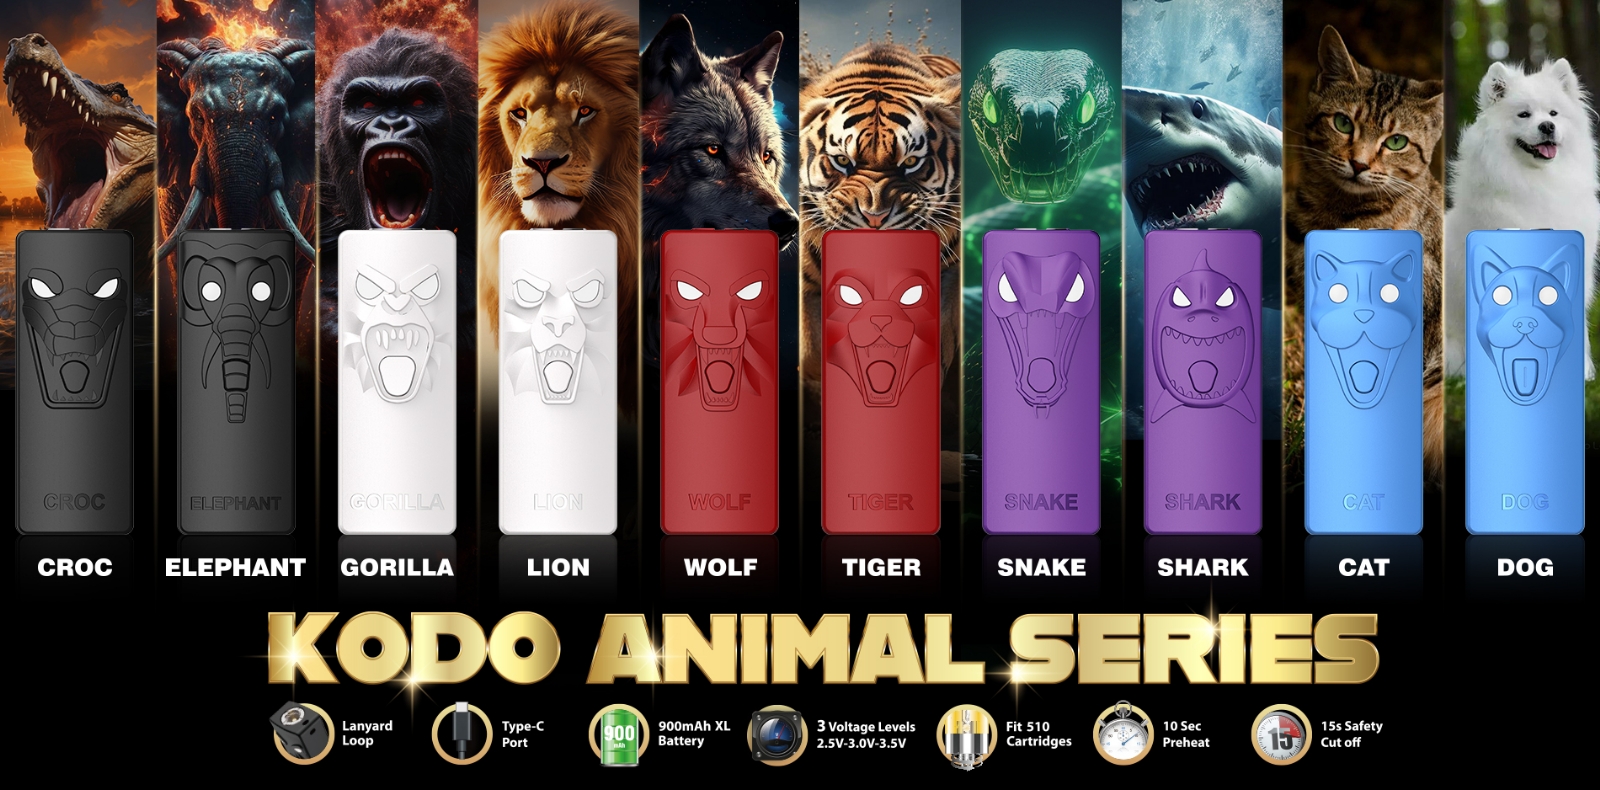 Yocan Kodo Animal Series banner